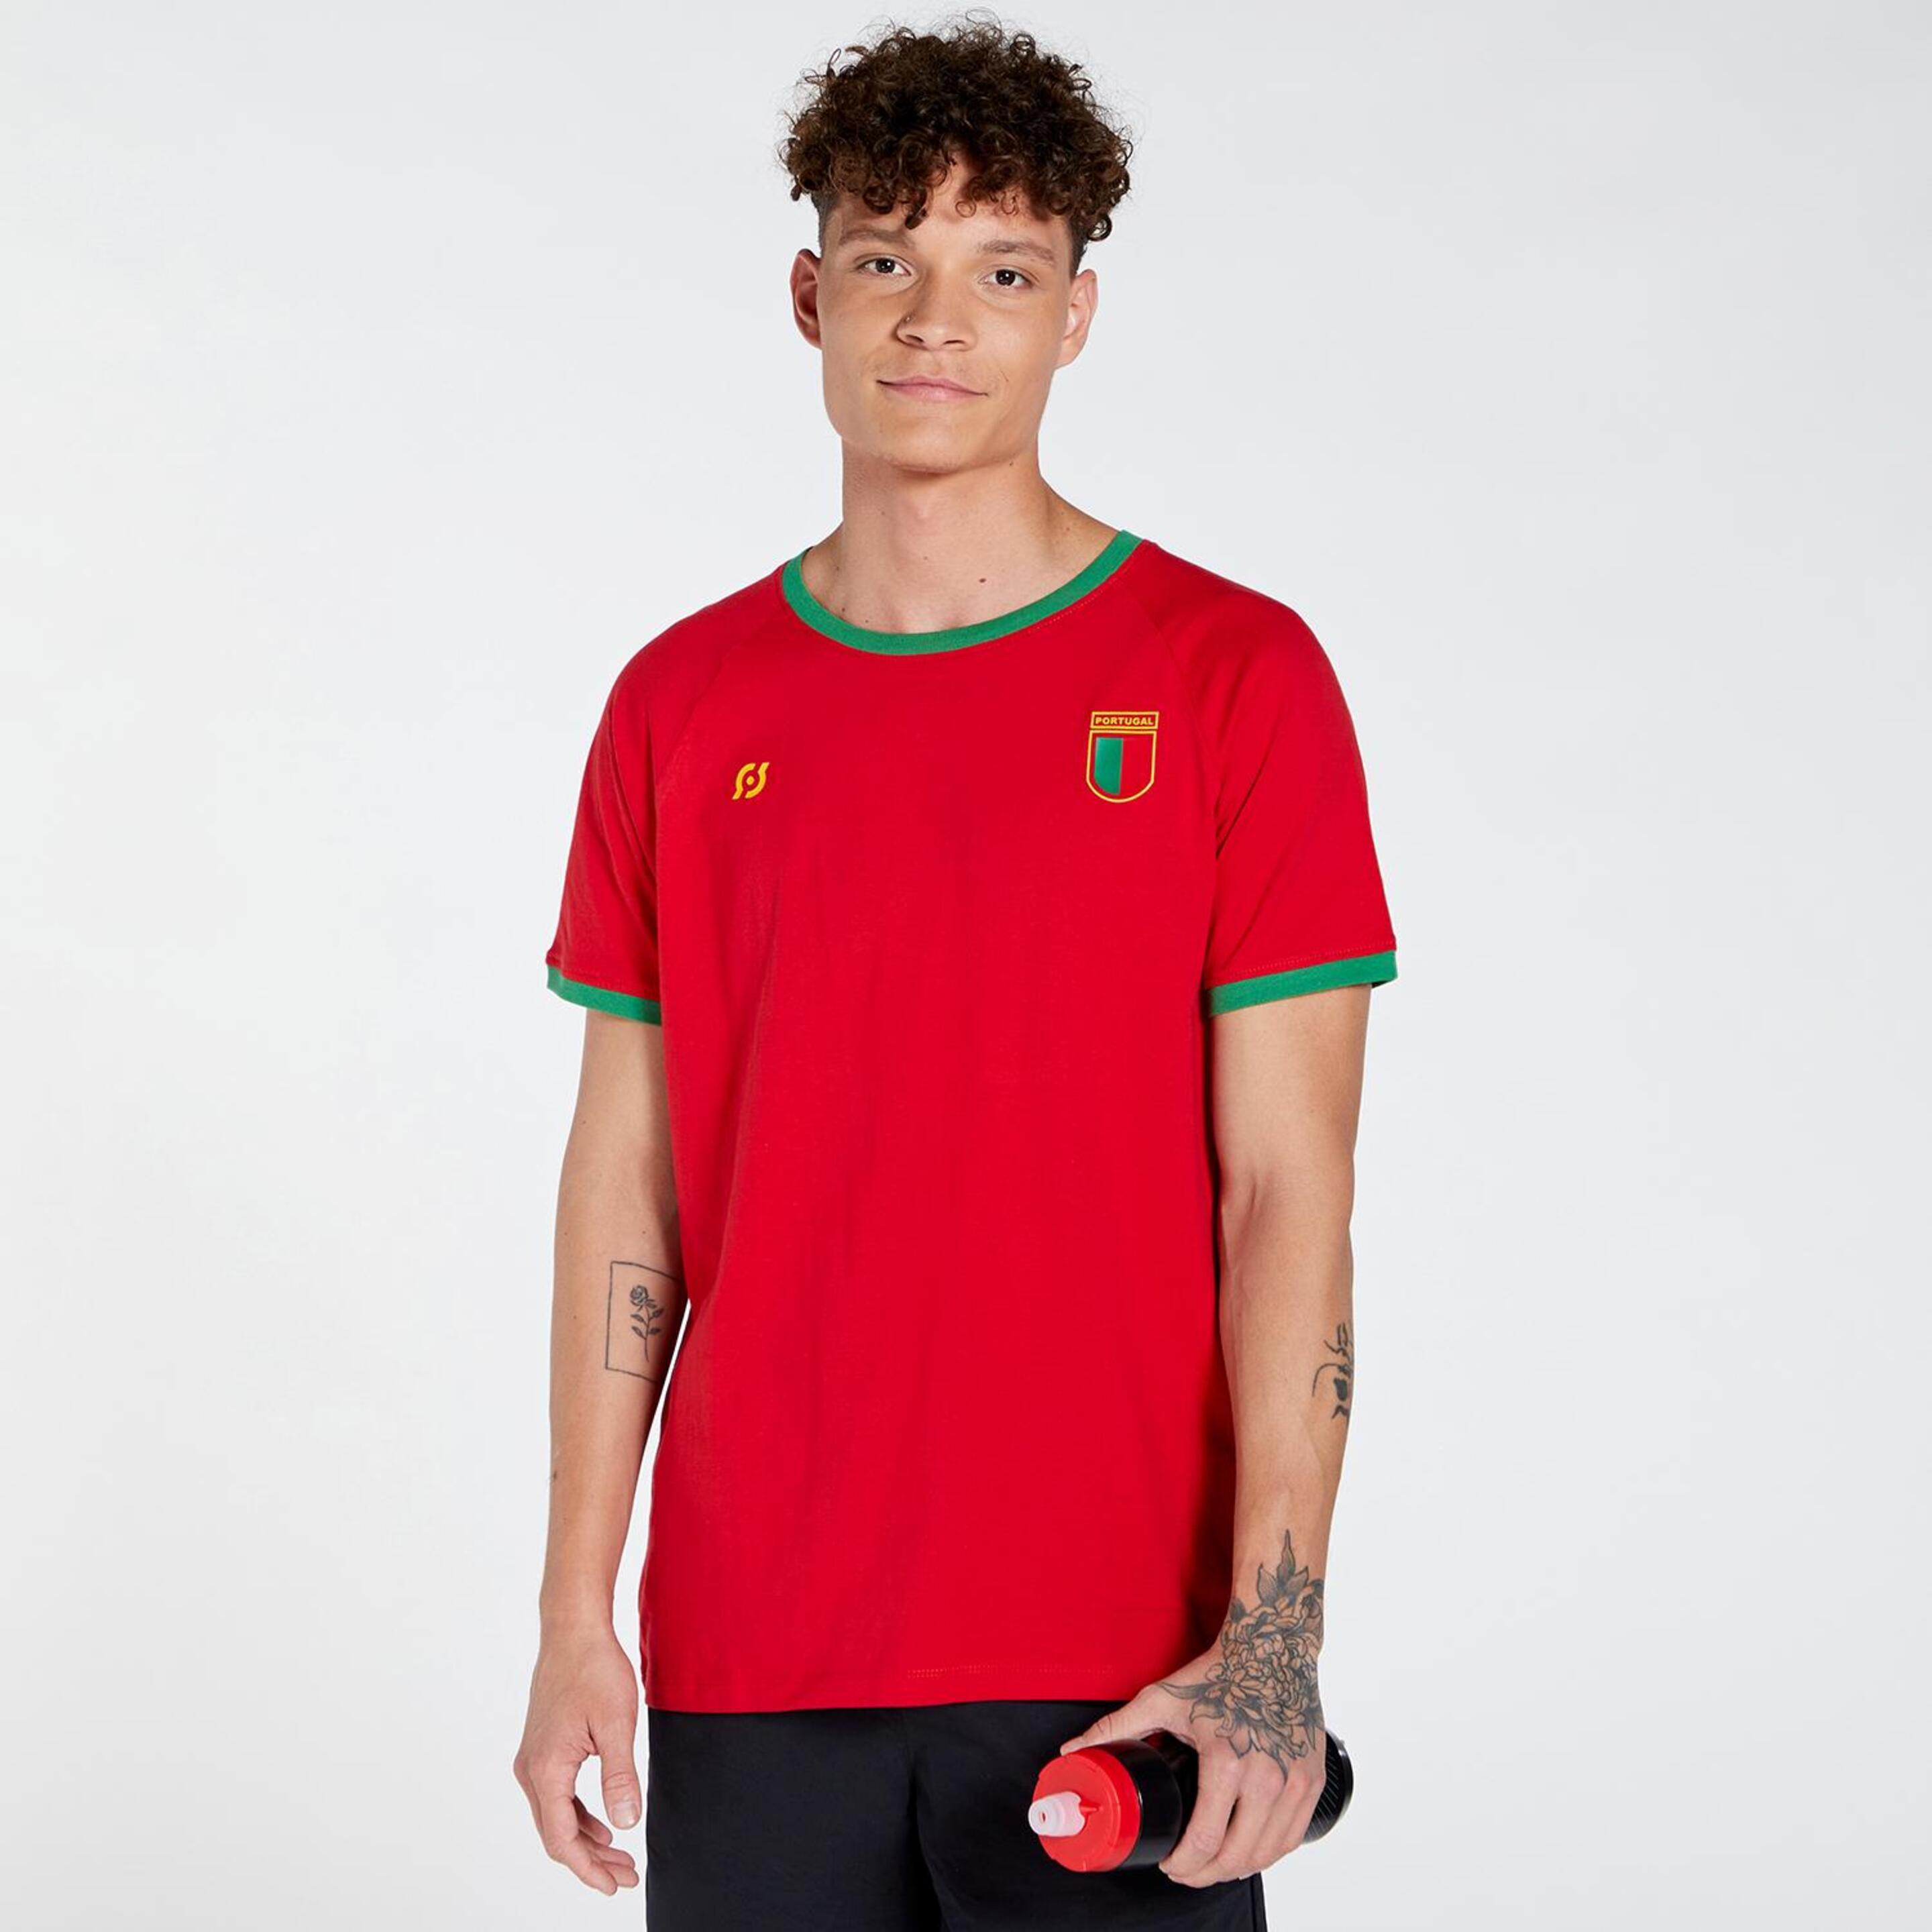 Camiseta Portugal Team Quest - rojo - Camiseta Fútbol Hombre